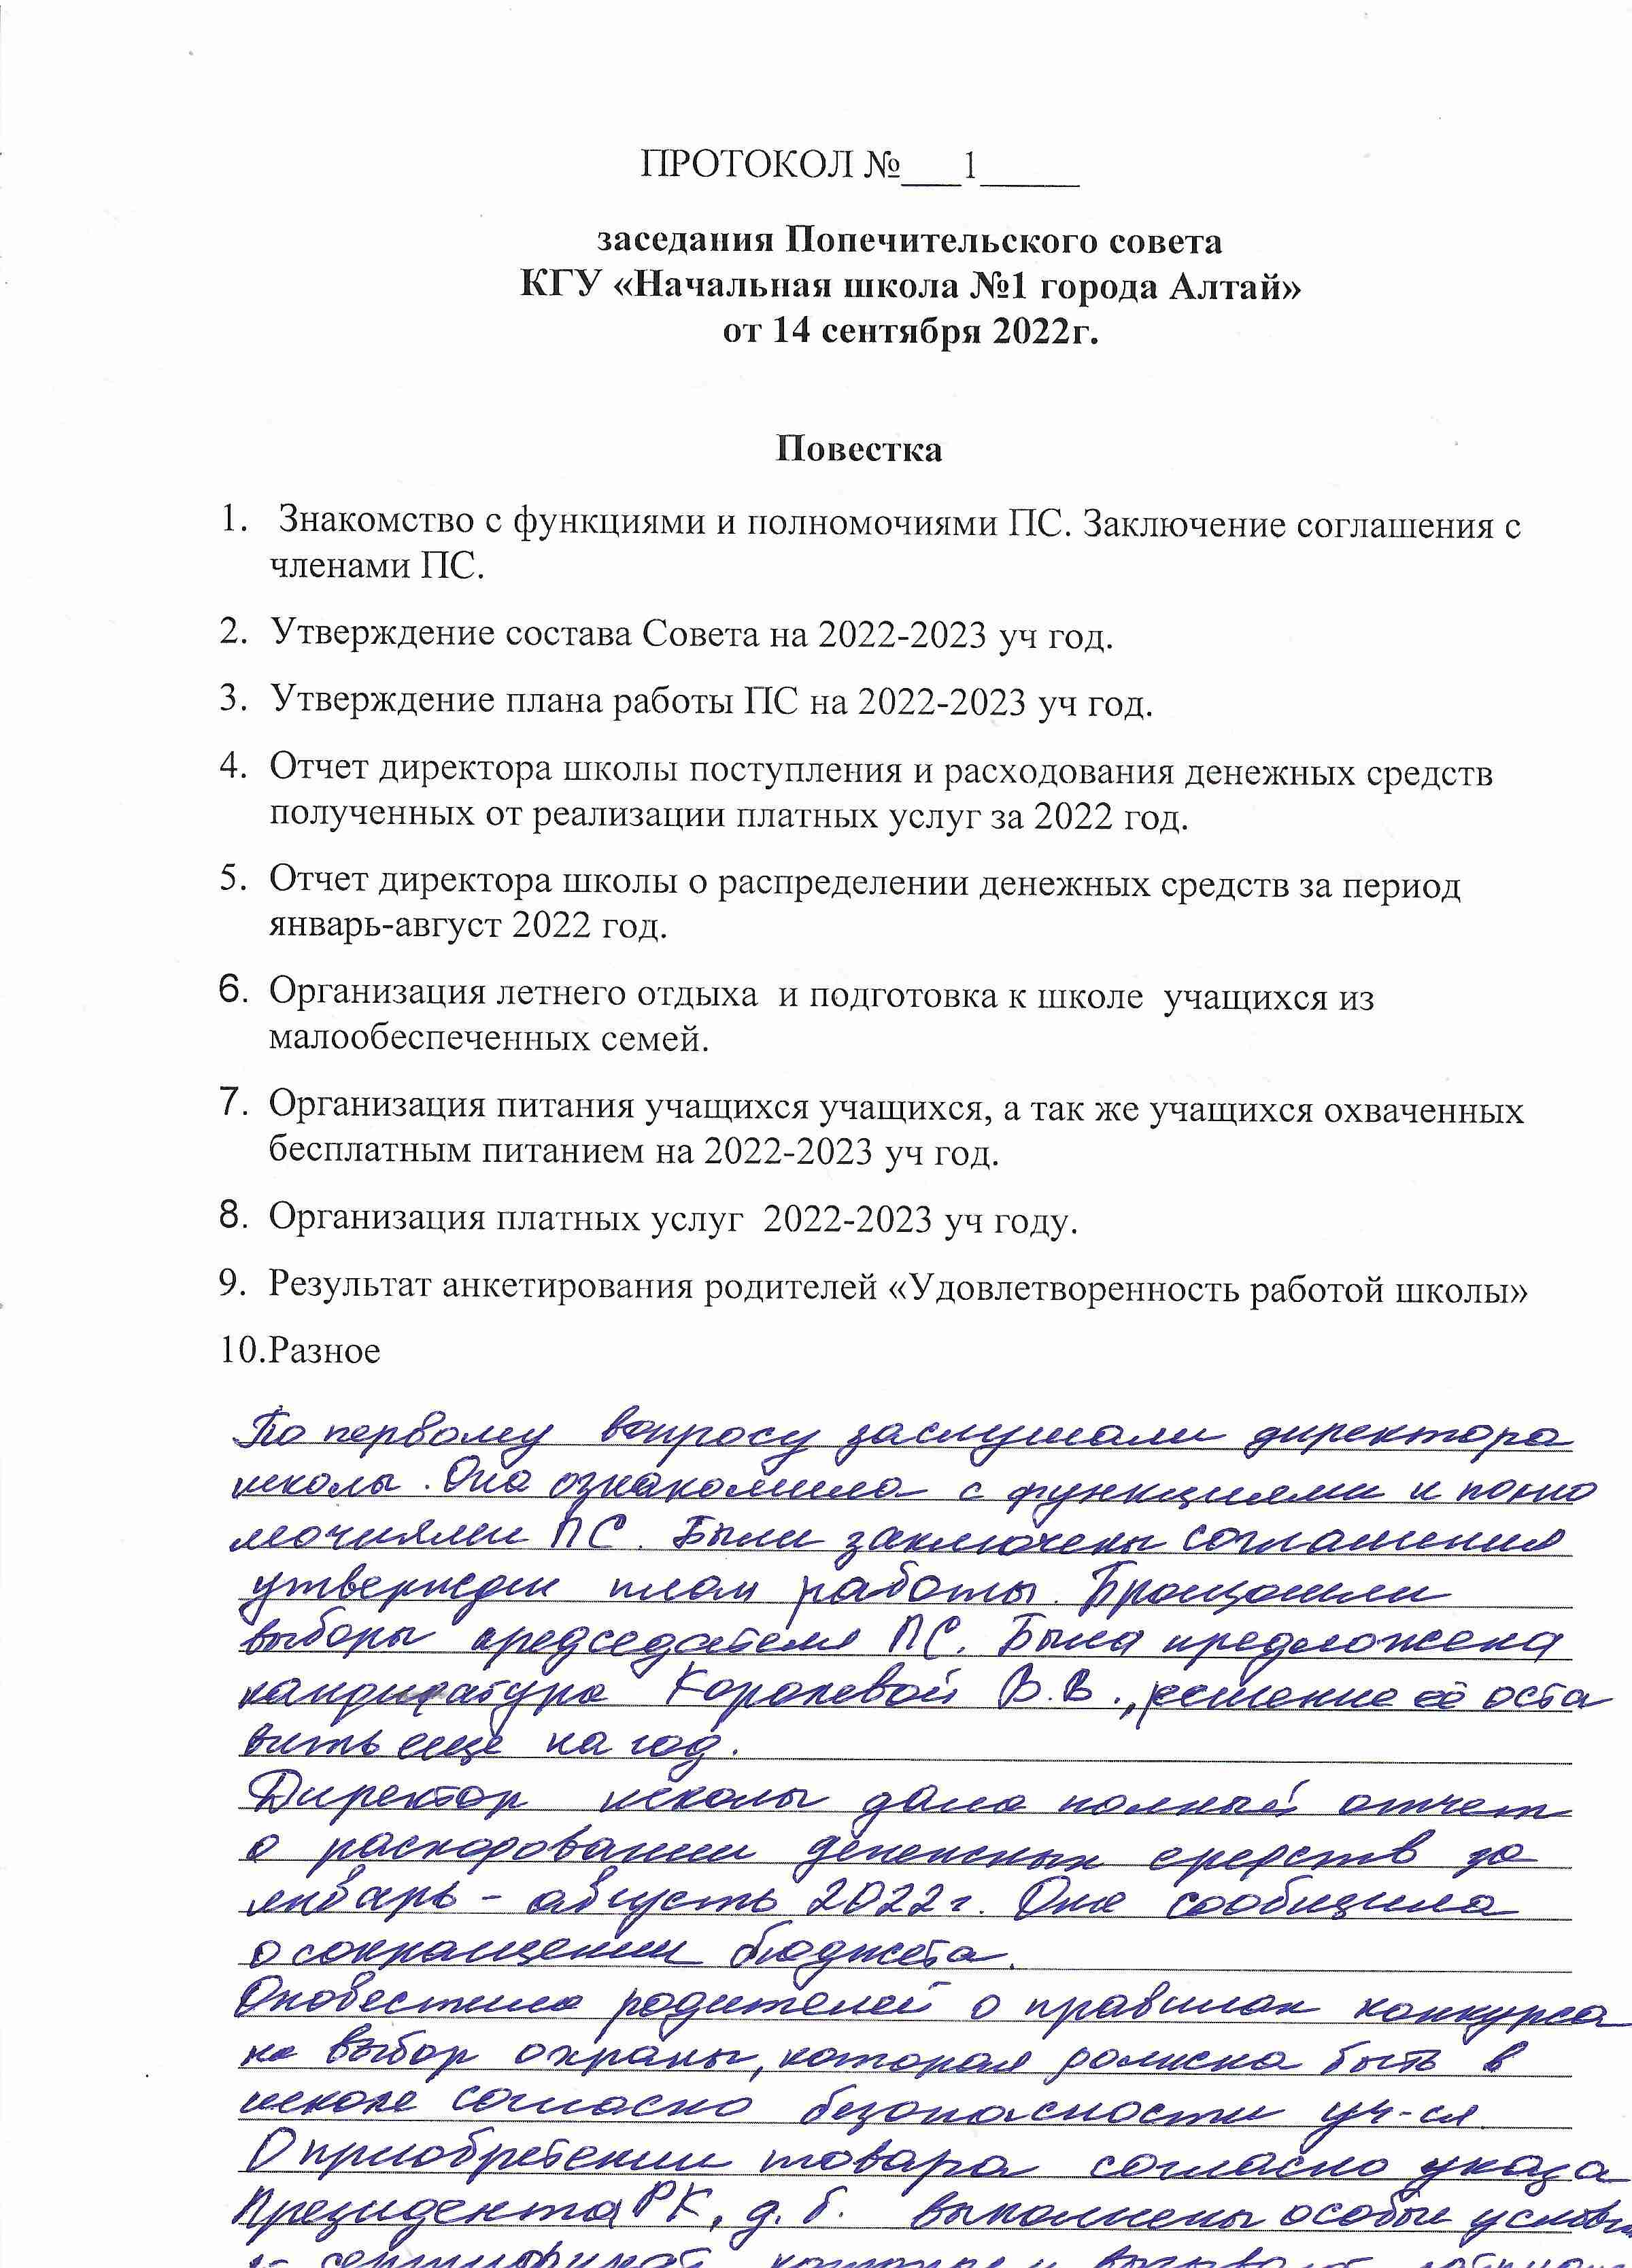 Протокол заседания попечительского совета 14.09.2022